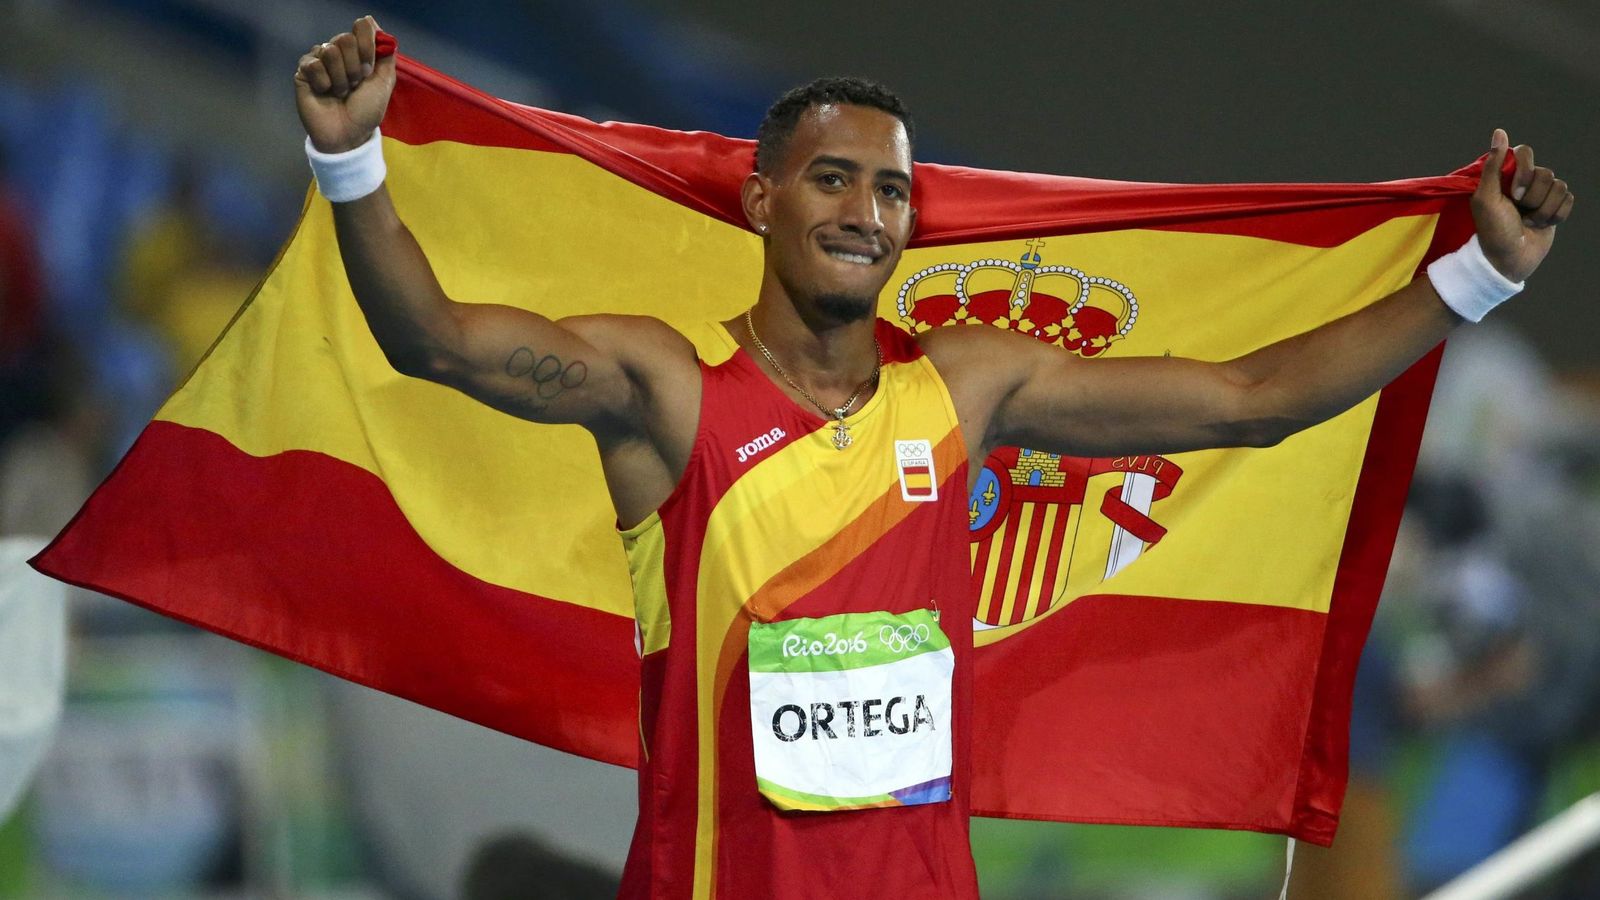 Foto: Orlando Ortega celebra su medalla de plata en los 110 metros vallas (Reuters).